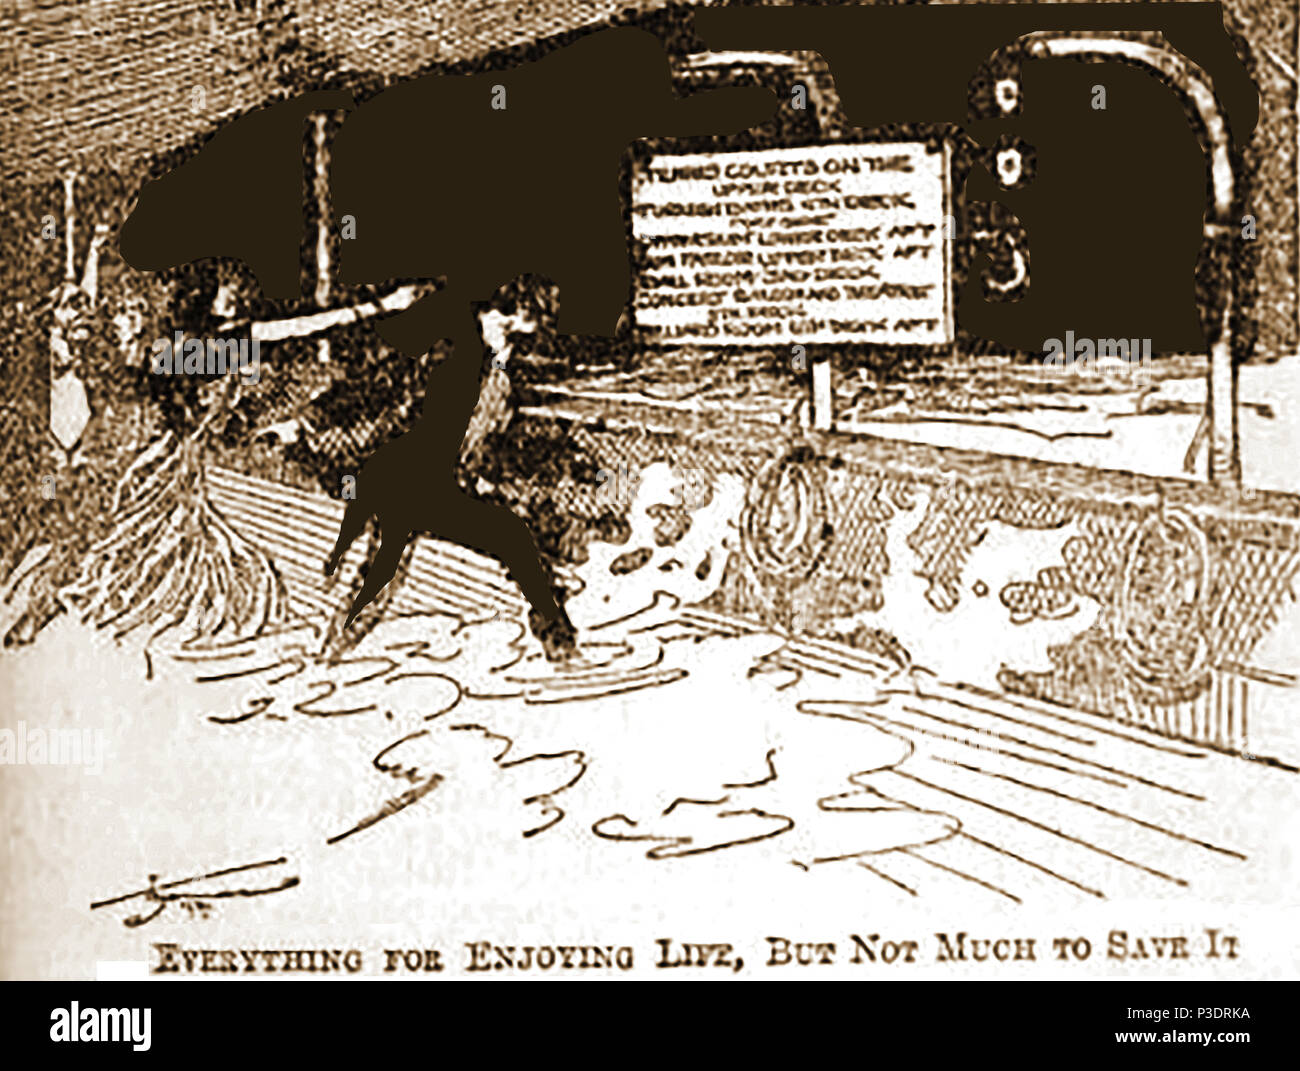 Une critique de presse 1912 caricature commentaires sur l'absence de l'équipement de sauvetage qui a mené au naufrage du RMS Titanic Banque D'Images